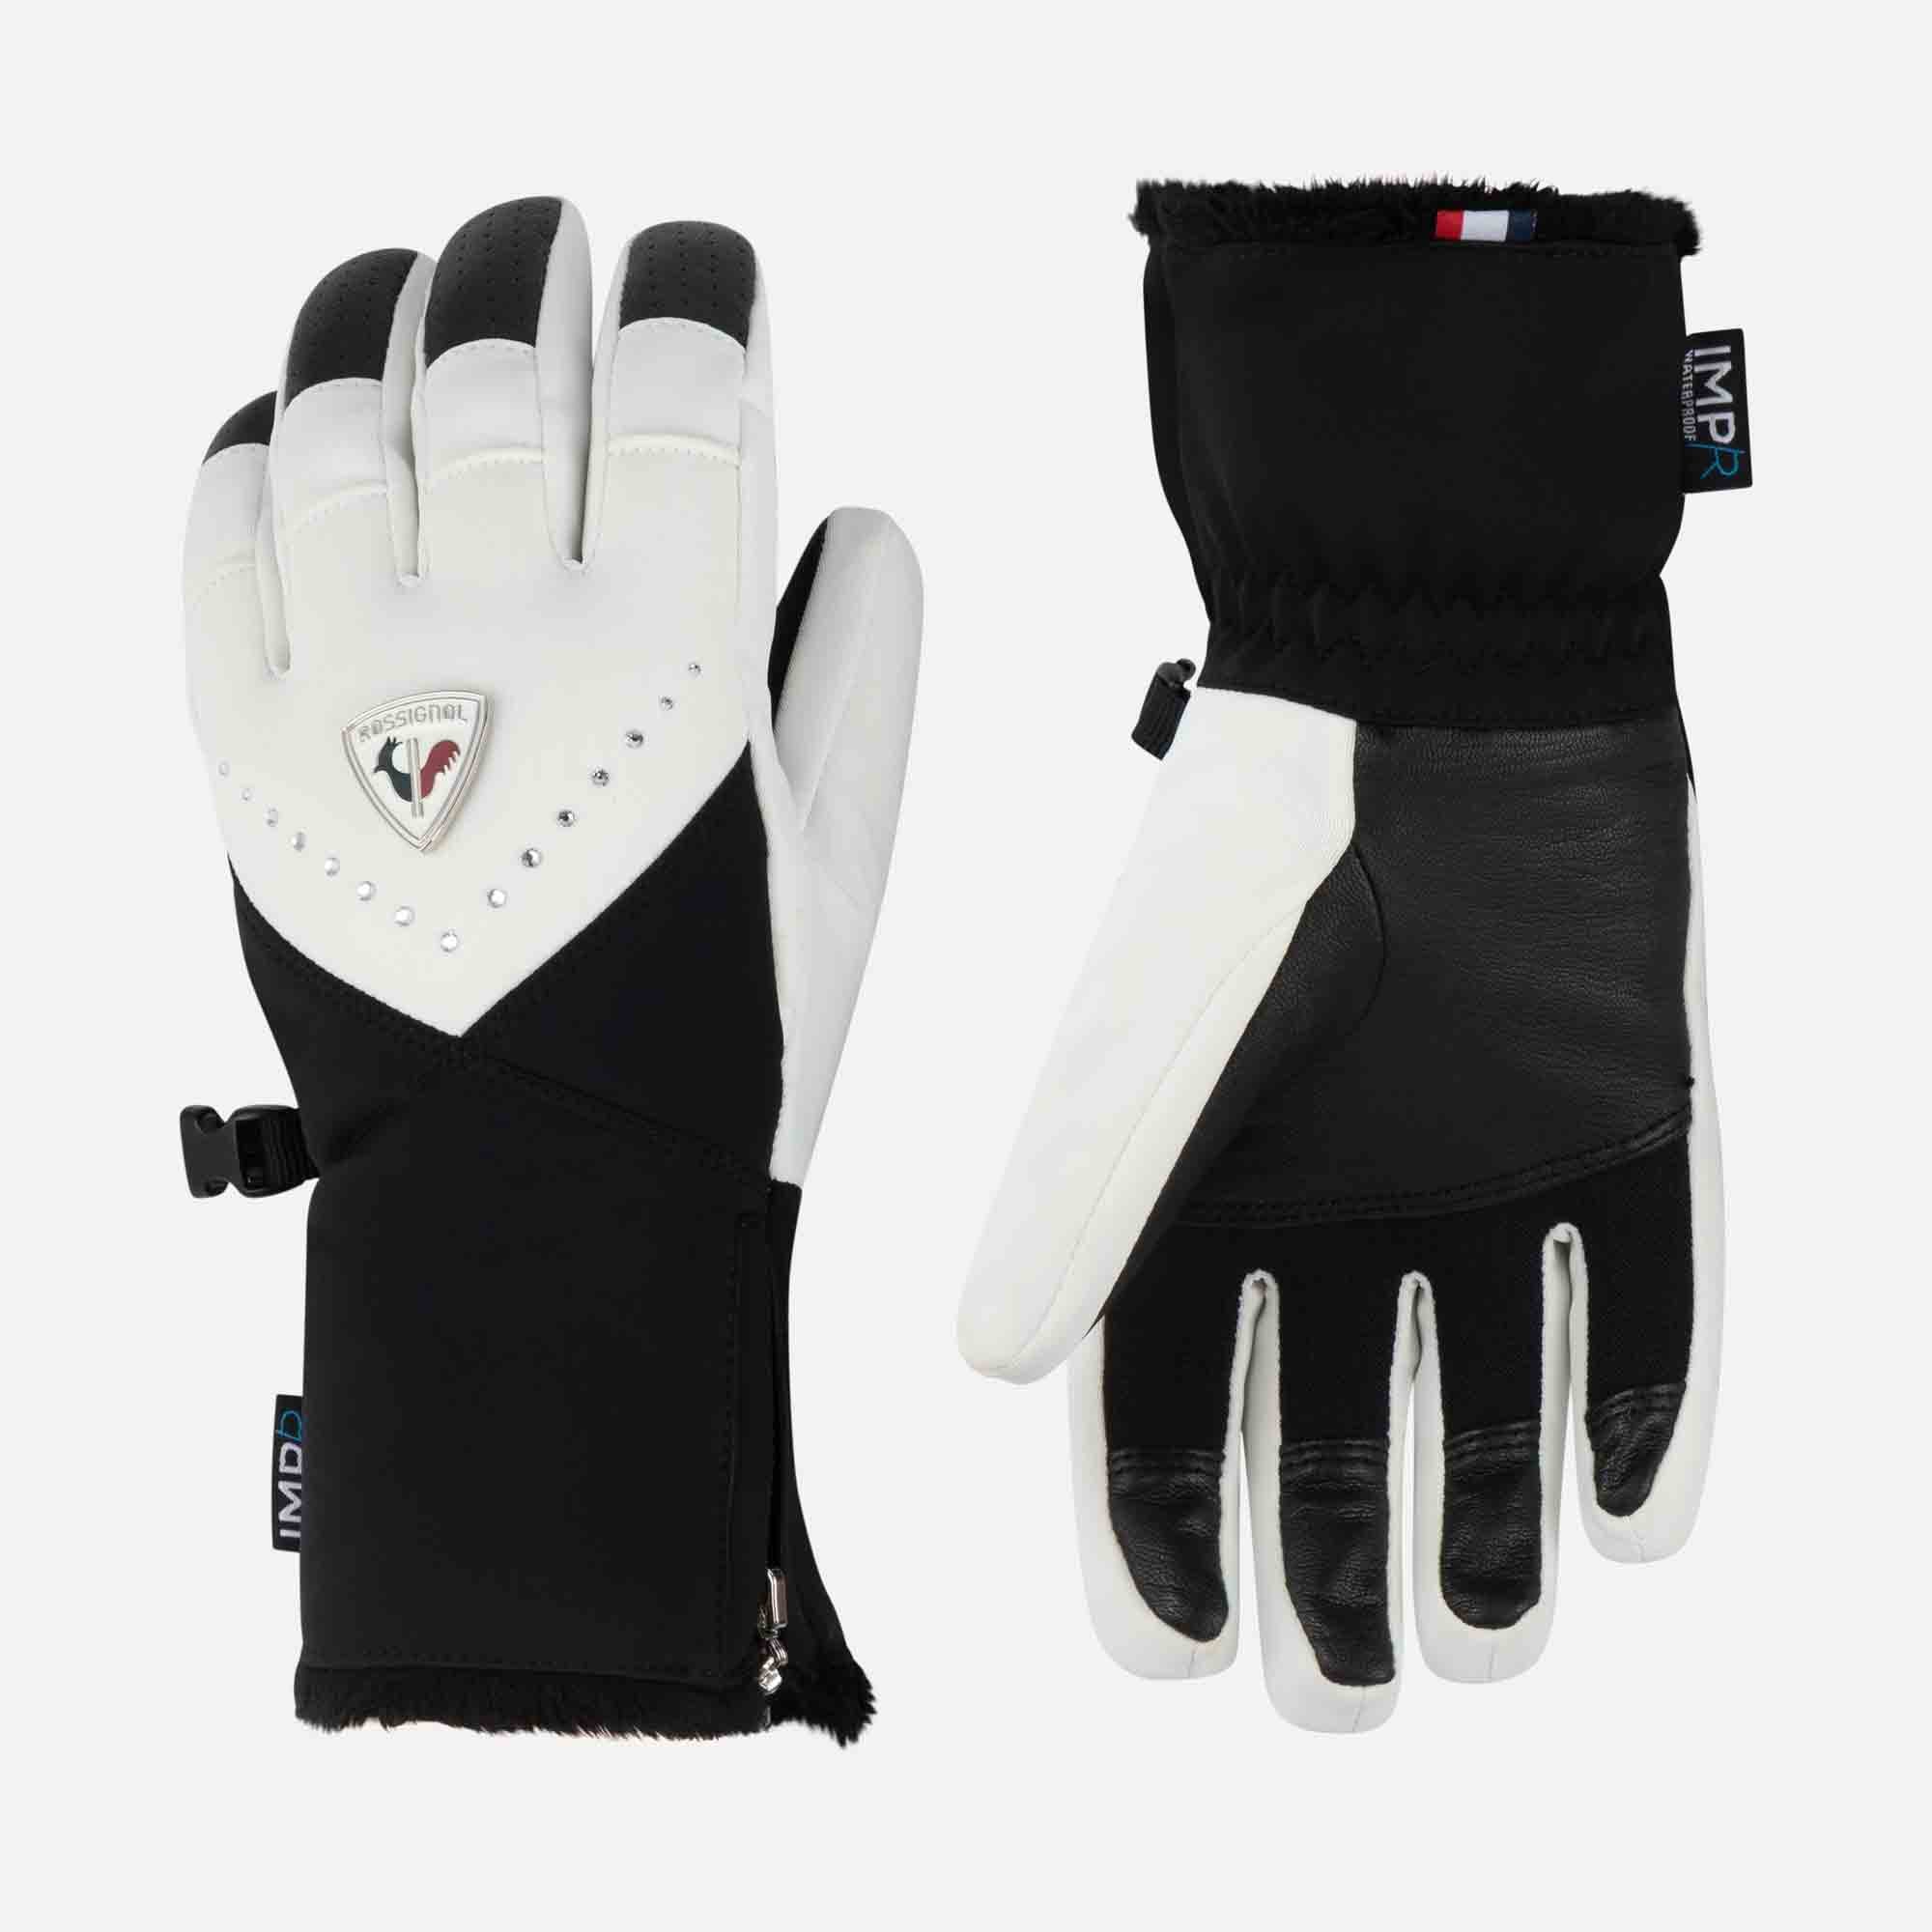 Women's Absolut waterproof ski gloves